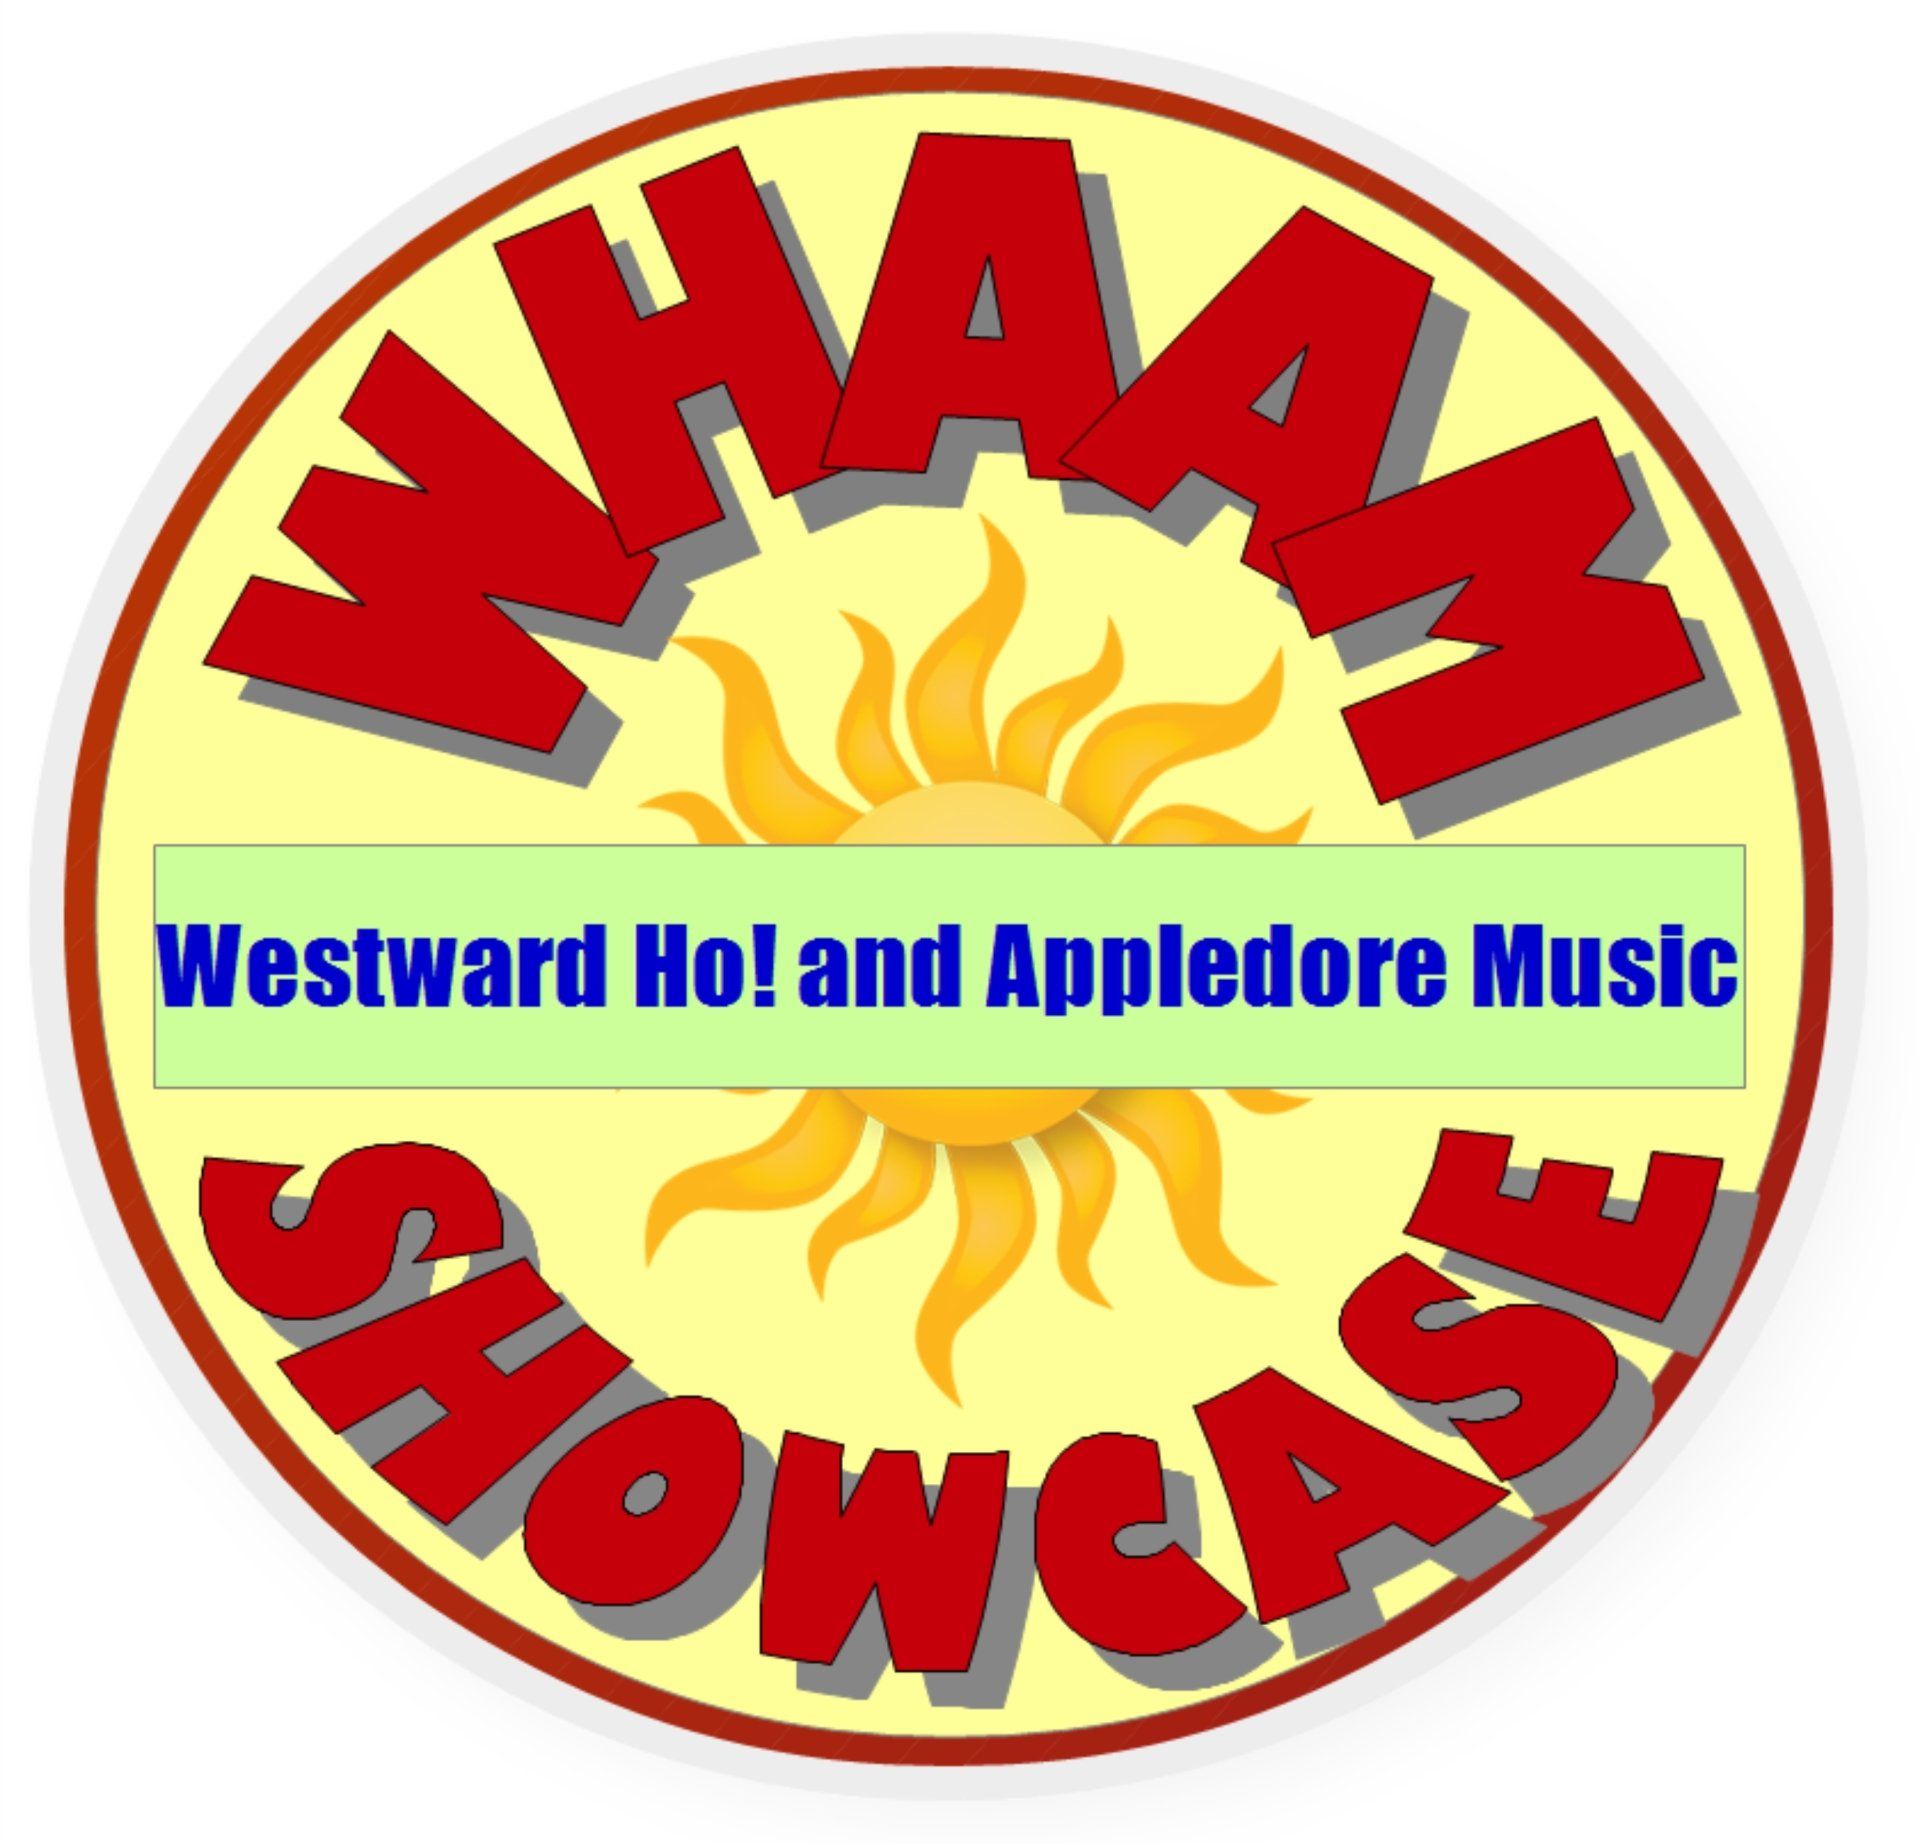 WHAAM music showcase held in the Pier House, Westward Ho!